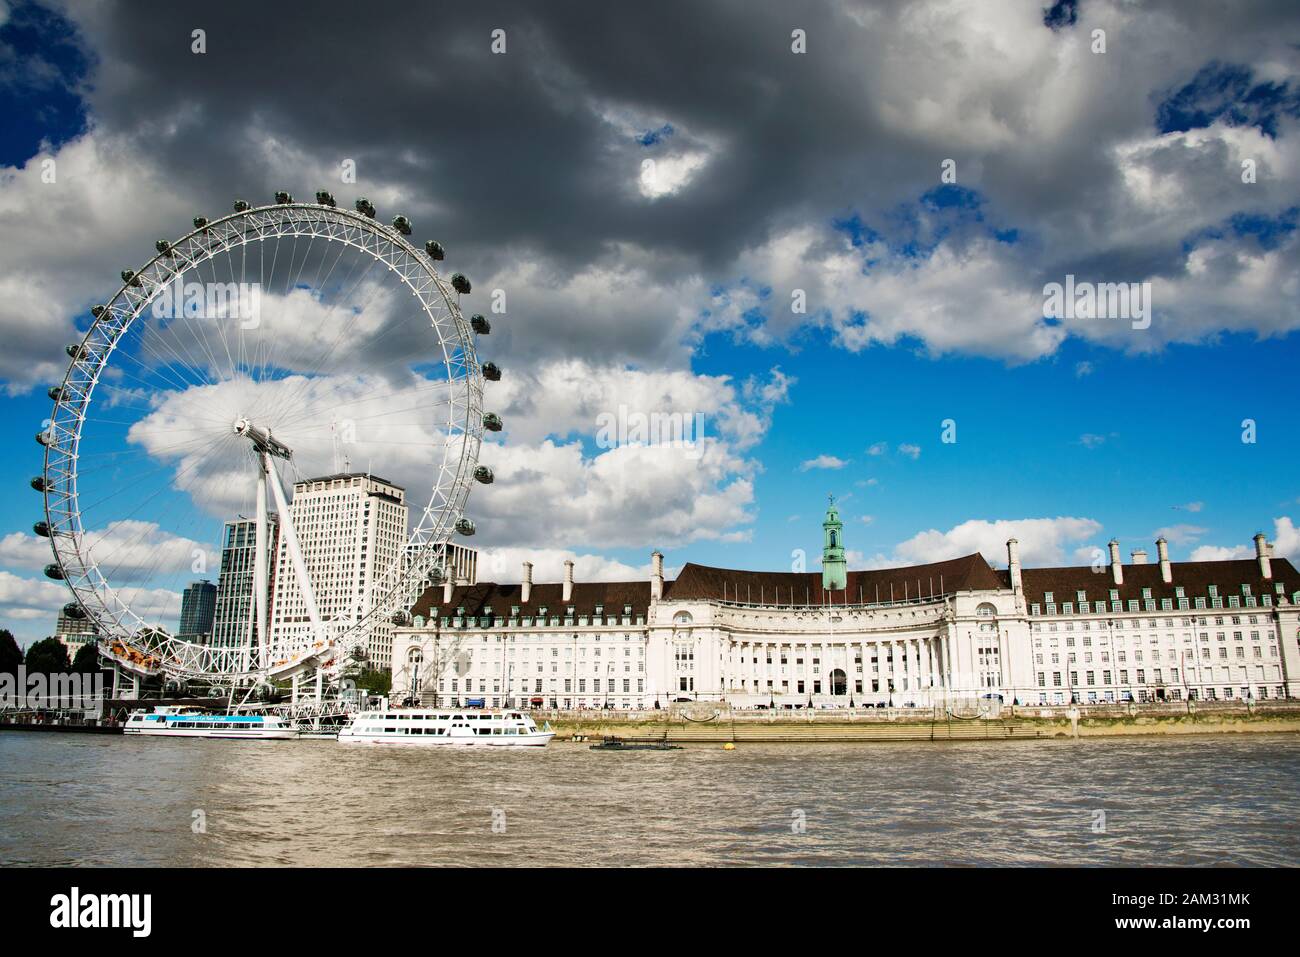 County Hall & London Eye mit Blick auf die Themse und Touristenboote. Mischung aus weißen und dunklen Wolken gegen blauen Himmel Stockfoto